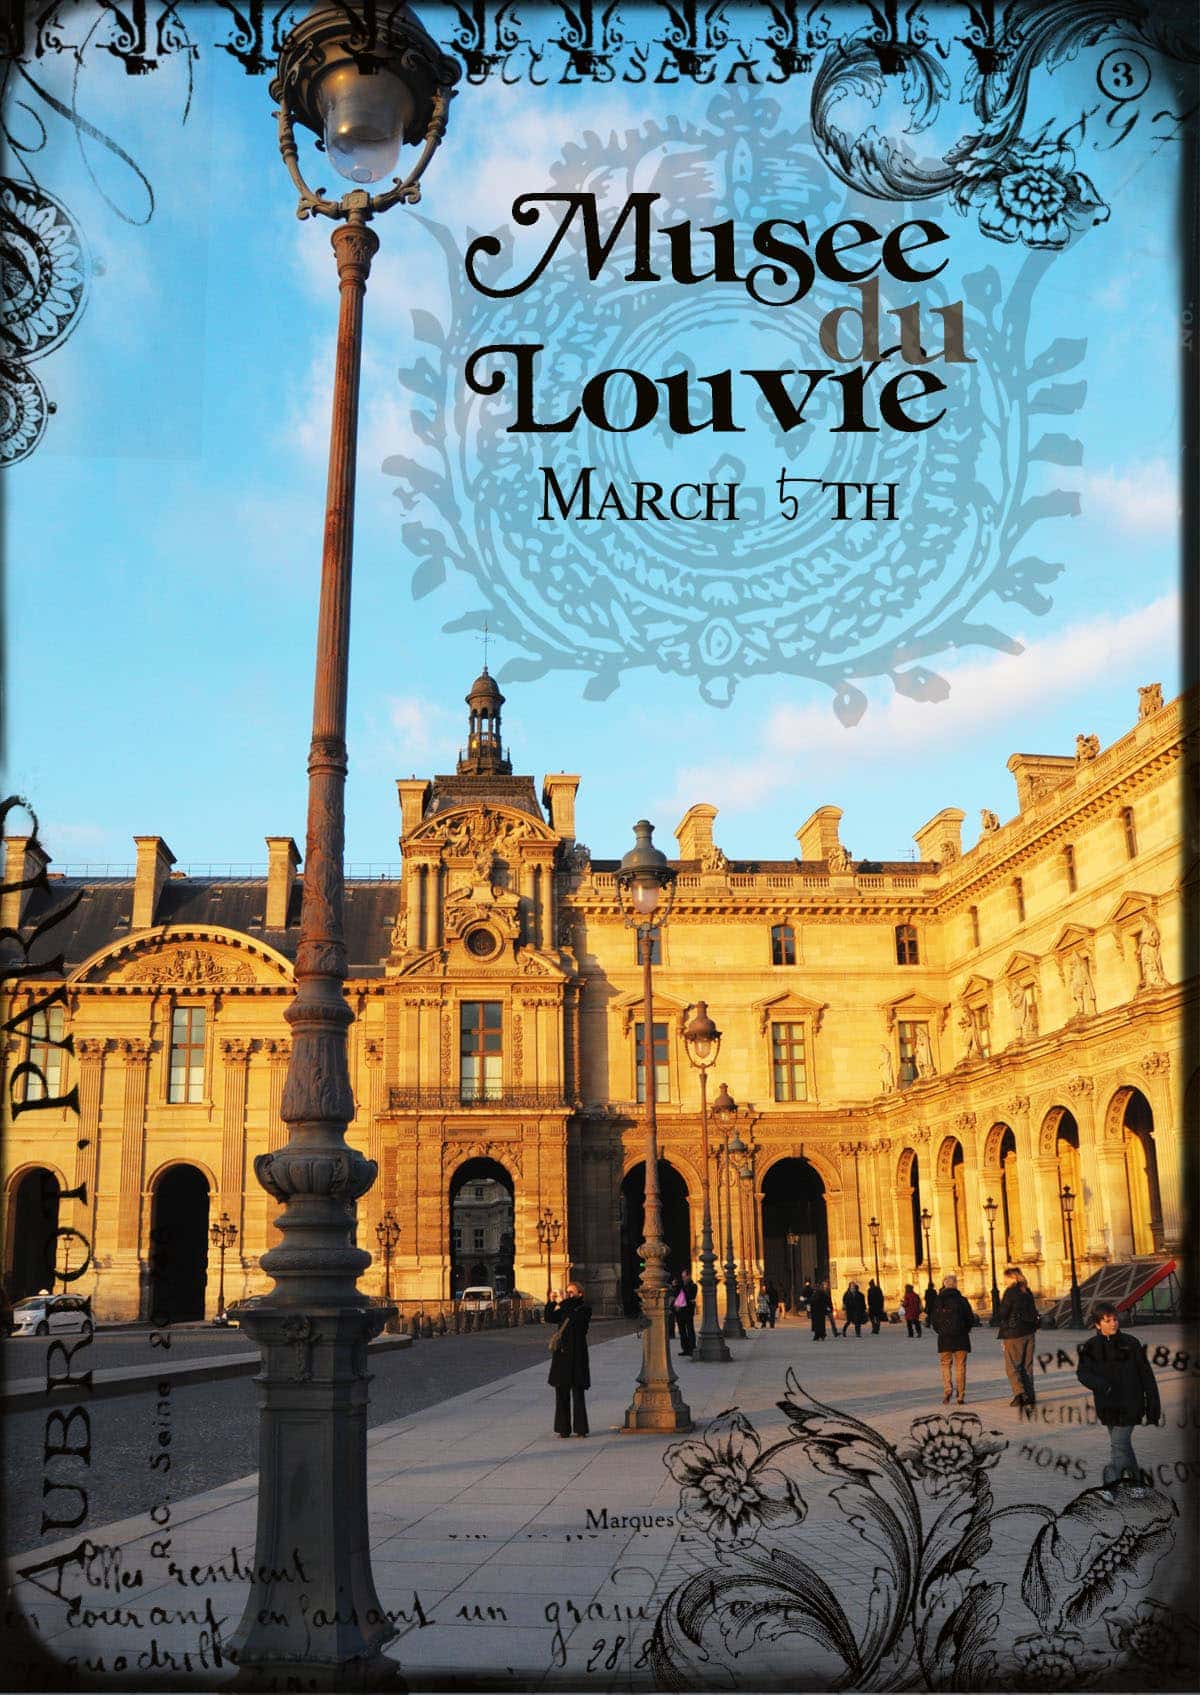 Visiting Paris: The Louvre